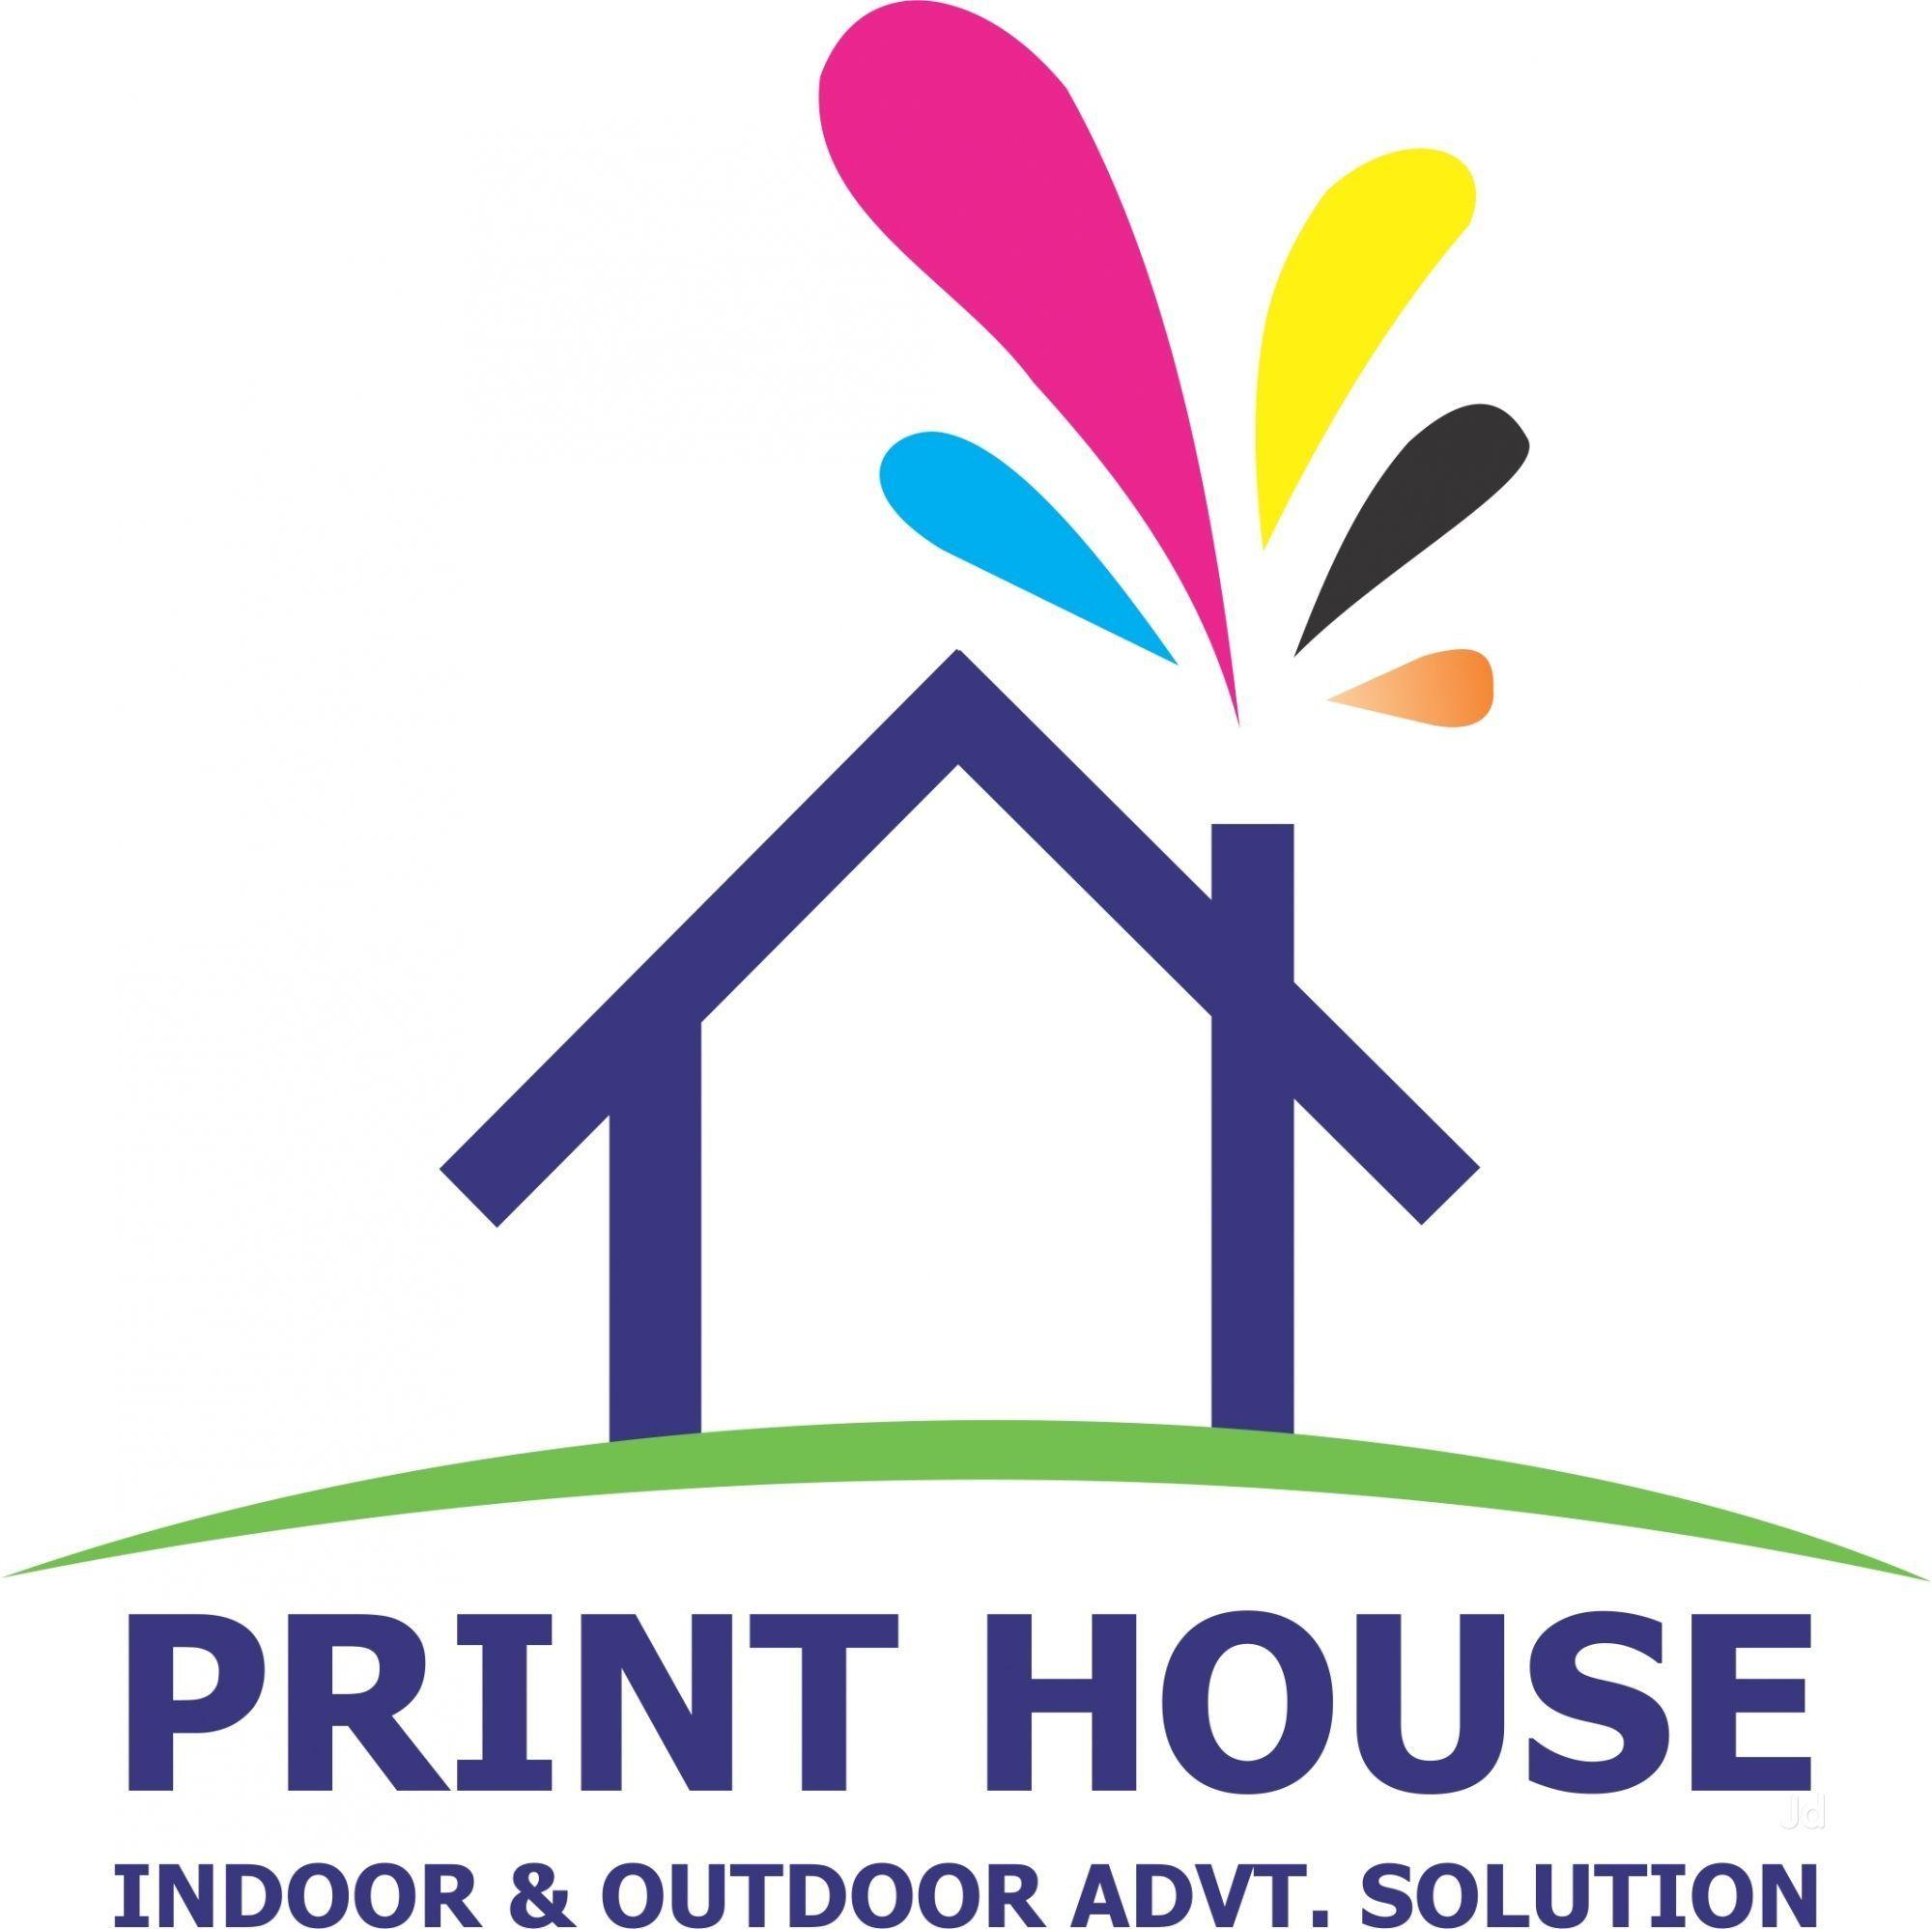 Printing House Logo - Print House Photo, Vaishali Nagar, Jaipur- Picture & Image